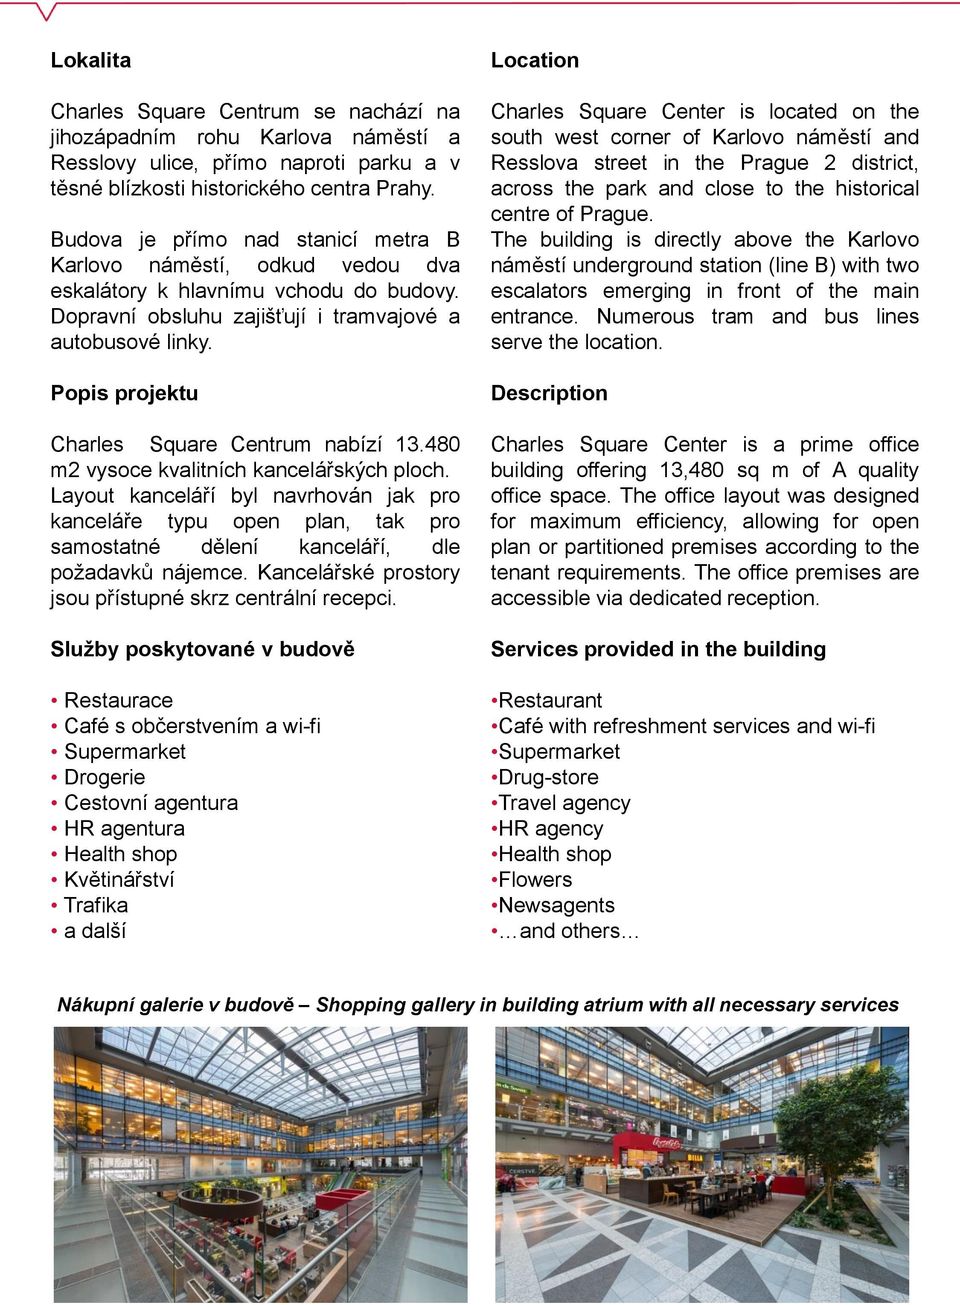 Popis projektu Charles Square Centrum nabízí 13.480 m2 vysoce kvalitních kancelářských ploch.